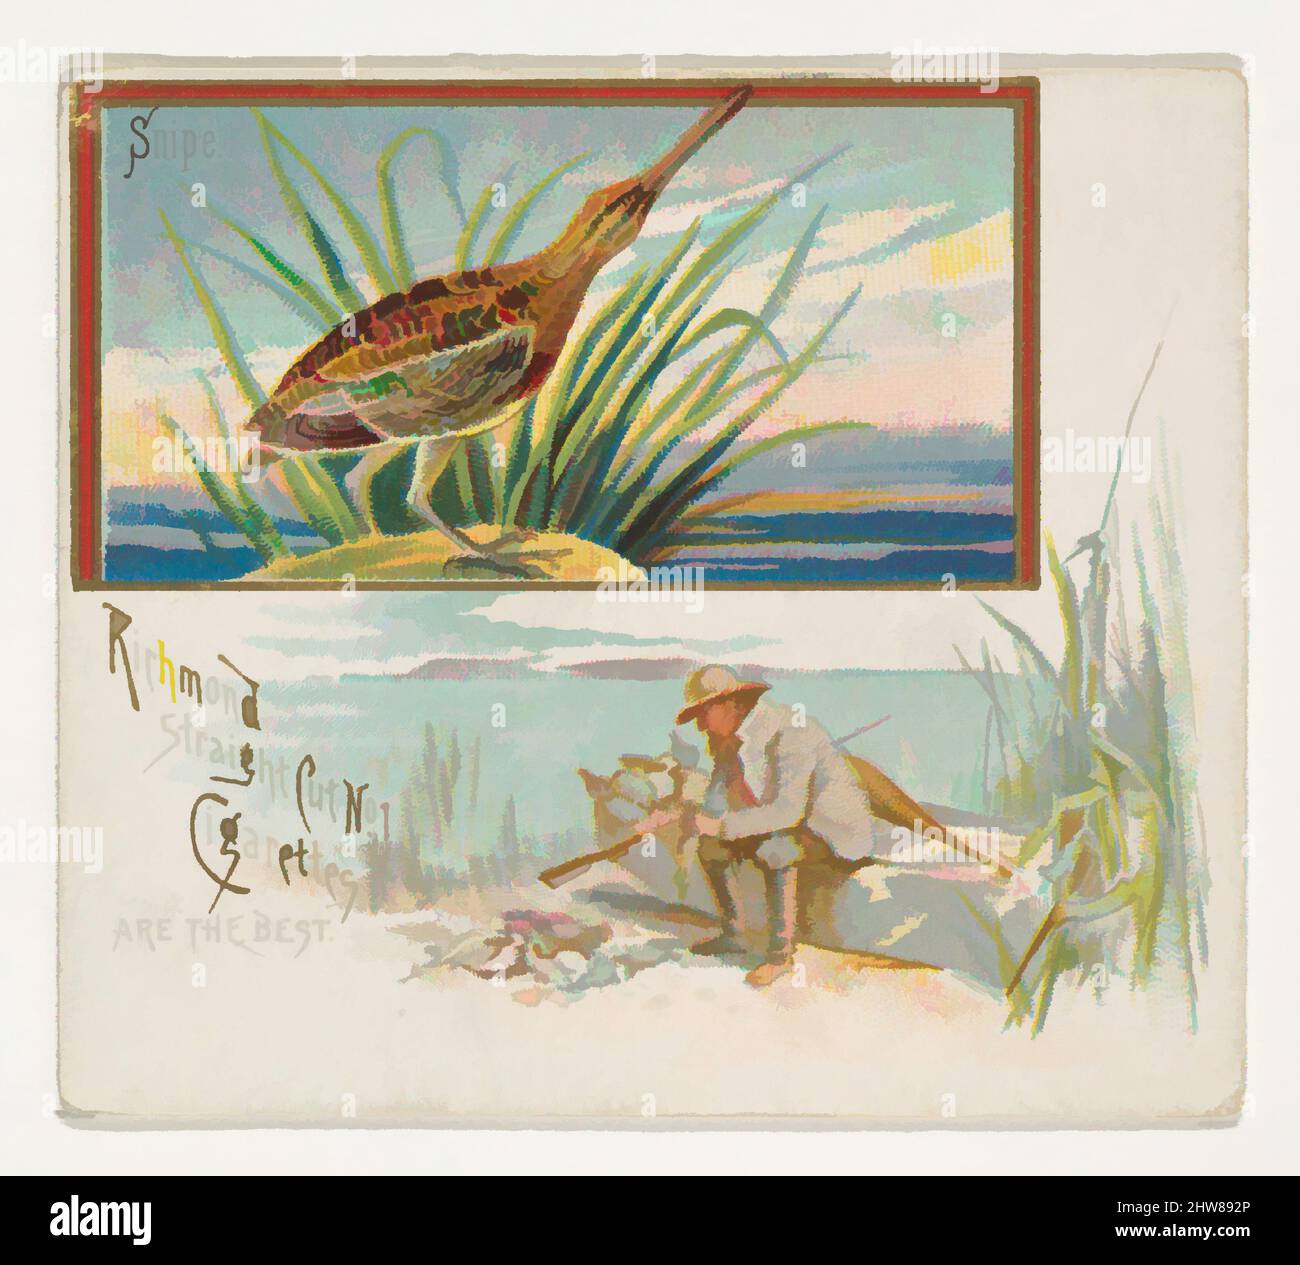 Art Inspired by Snipe, from the Game Birds series (N40) for Allen & Ginter Cigarettes, 1888–90, kommerzielle Farblithographie, Blatt: 2 7/8 x 3 1/4 Zoll (7,3 x 8,3 cm), Trade Cards aus der „Game Birds“-Serie (N40), die 1888-90 in einem Satz von 50 Karten zur Werbung für die Marke Allen & Ginter herausgegeben wurde. Classic Works wurde von Artotop mit einem Schuss Moderne modernisiert. Formen, Farbe und Wert, auffällige visuelle Wirkung auf Kunst. Emotionen durch Freiheit von Kunstwerken auf zeitgemäße Weise. Eine zeitlose Botschaft, die eine wild kreative neue Richtung verfolgt. Künstler, die sich dem digitalen Medium zuwenden und die Artotop NFT erschaffen Stockfoto